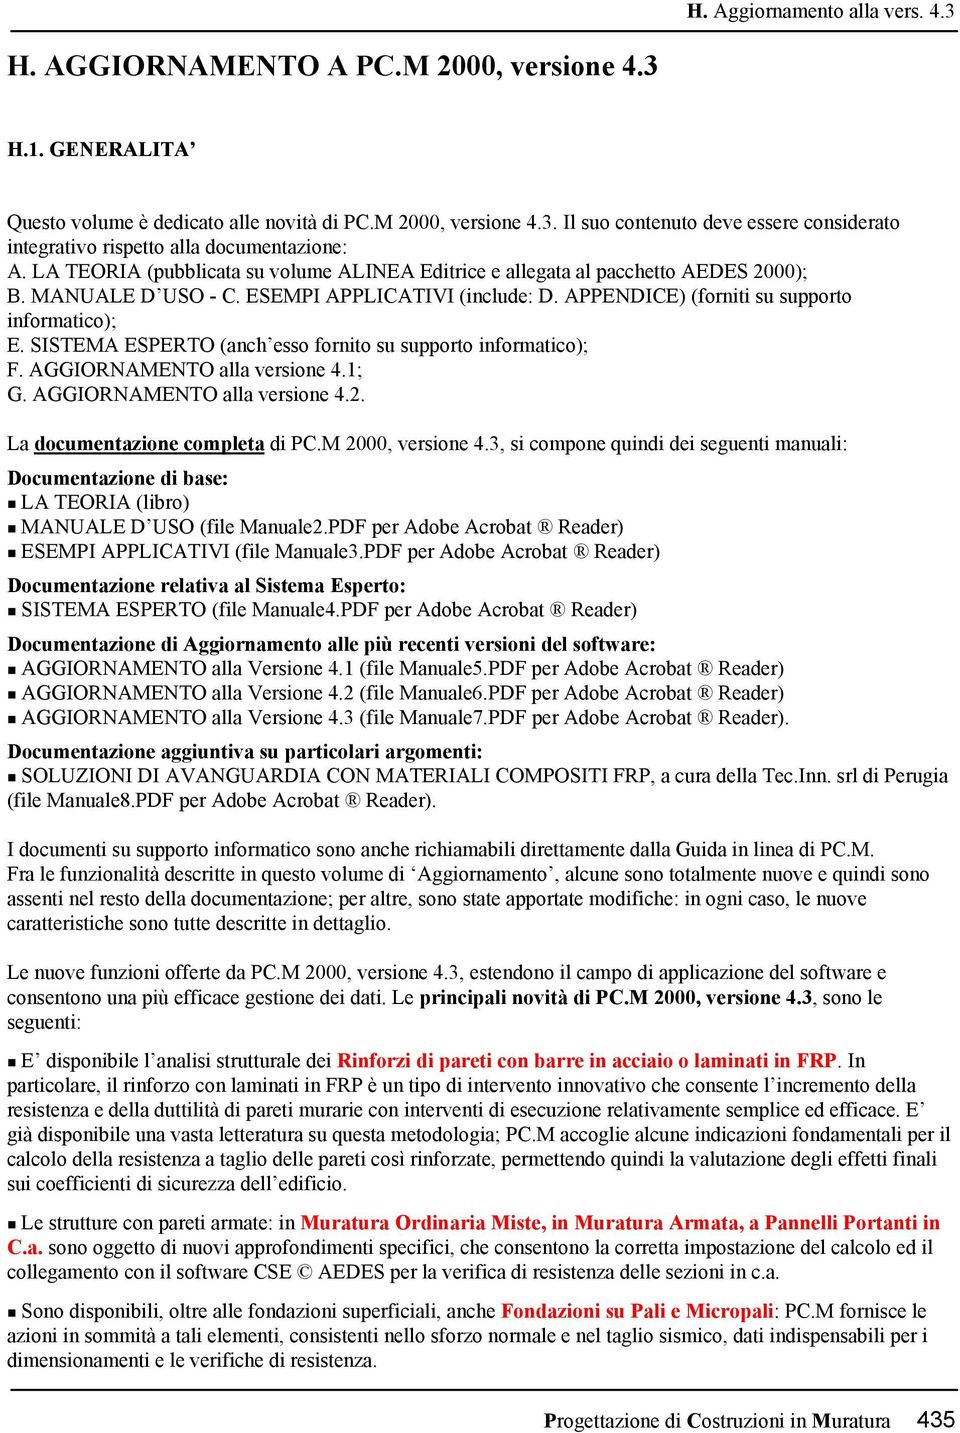 SISTEMA ESPERTO (anch esso fornito su supporto informatico); F. AGGIORNAMENTO alla versione 4.1; G. AGGIORNAMENTO alla versione 4.2. La documentazione completa di PC.M 2000, versione 4.